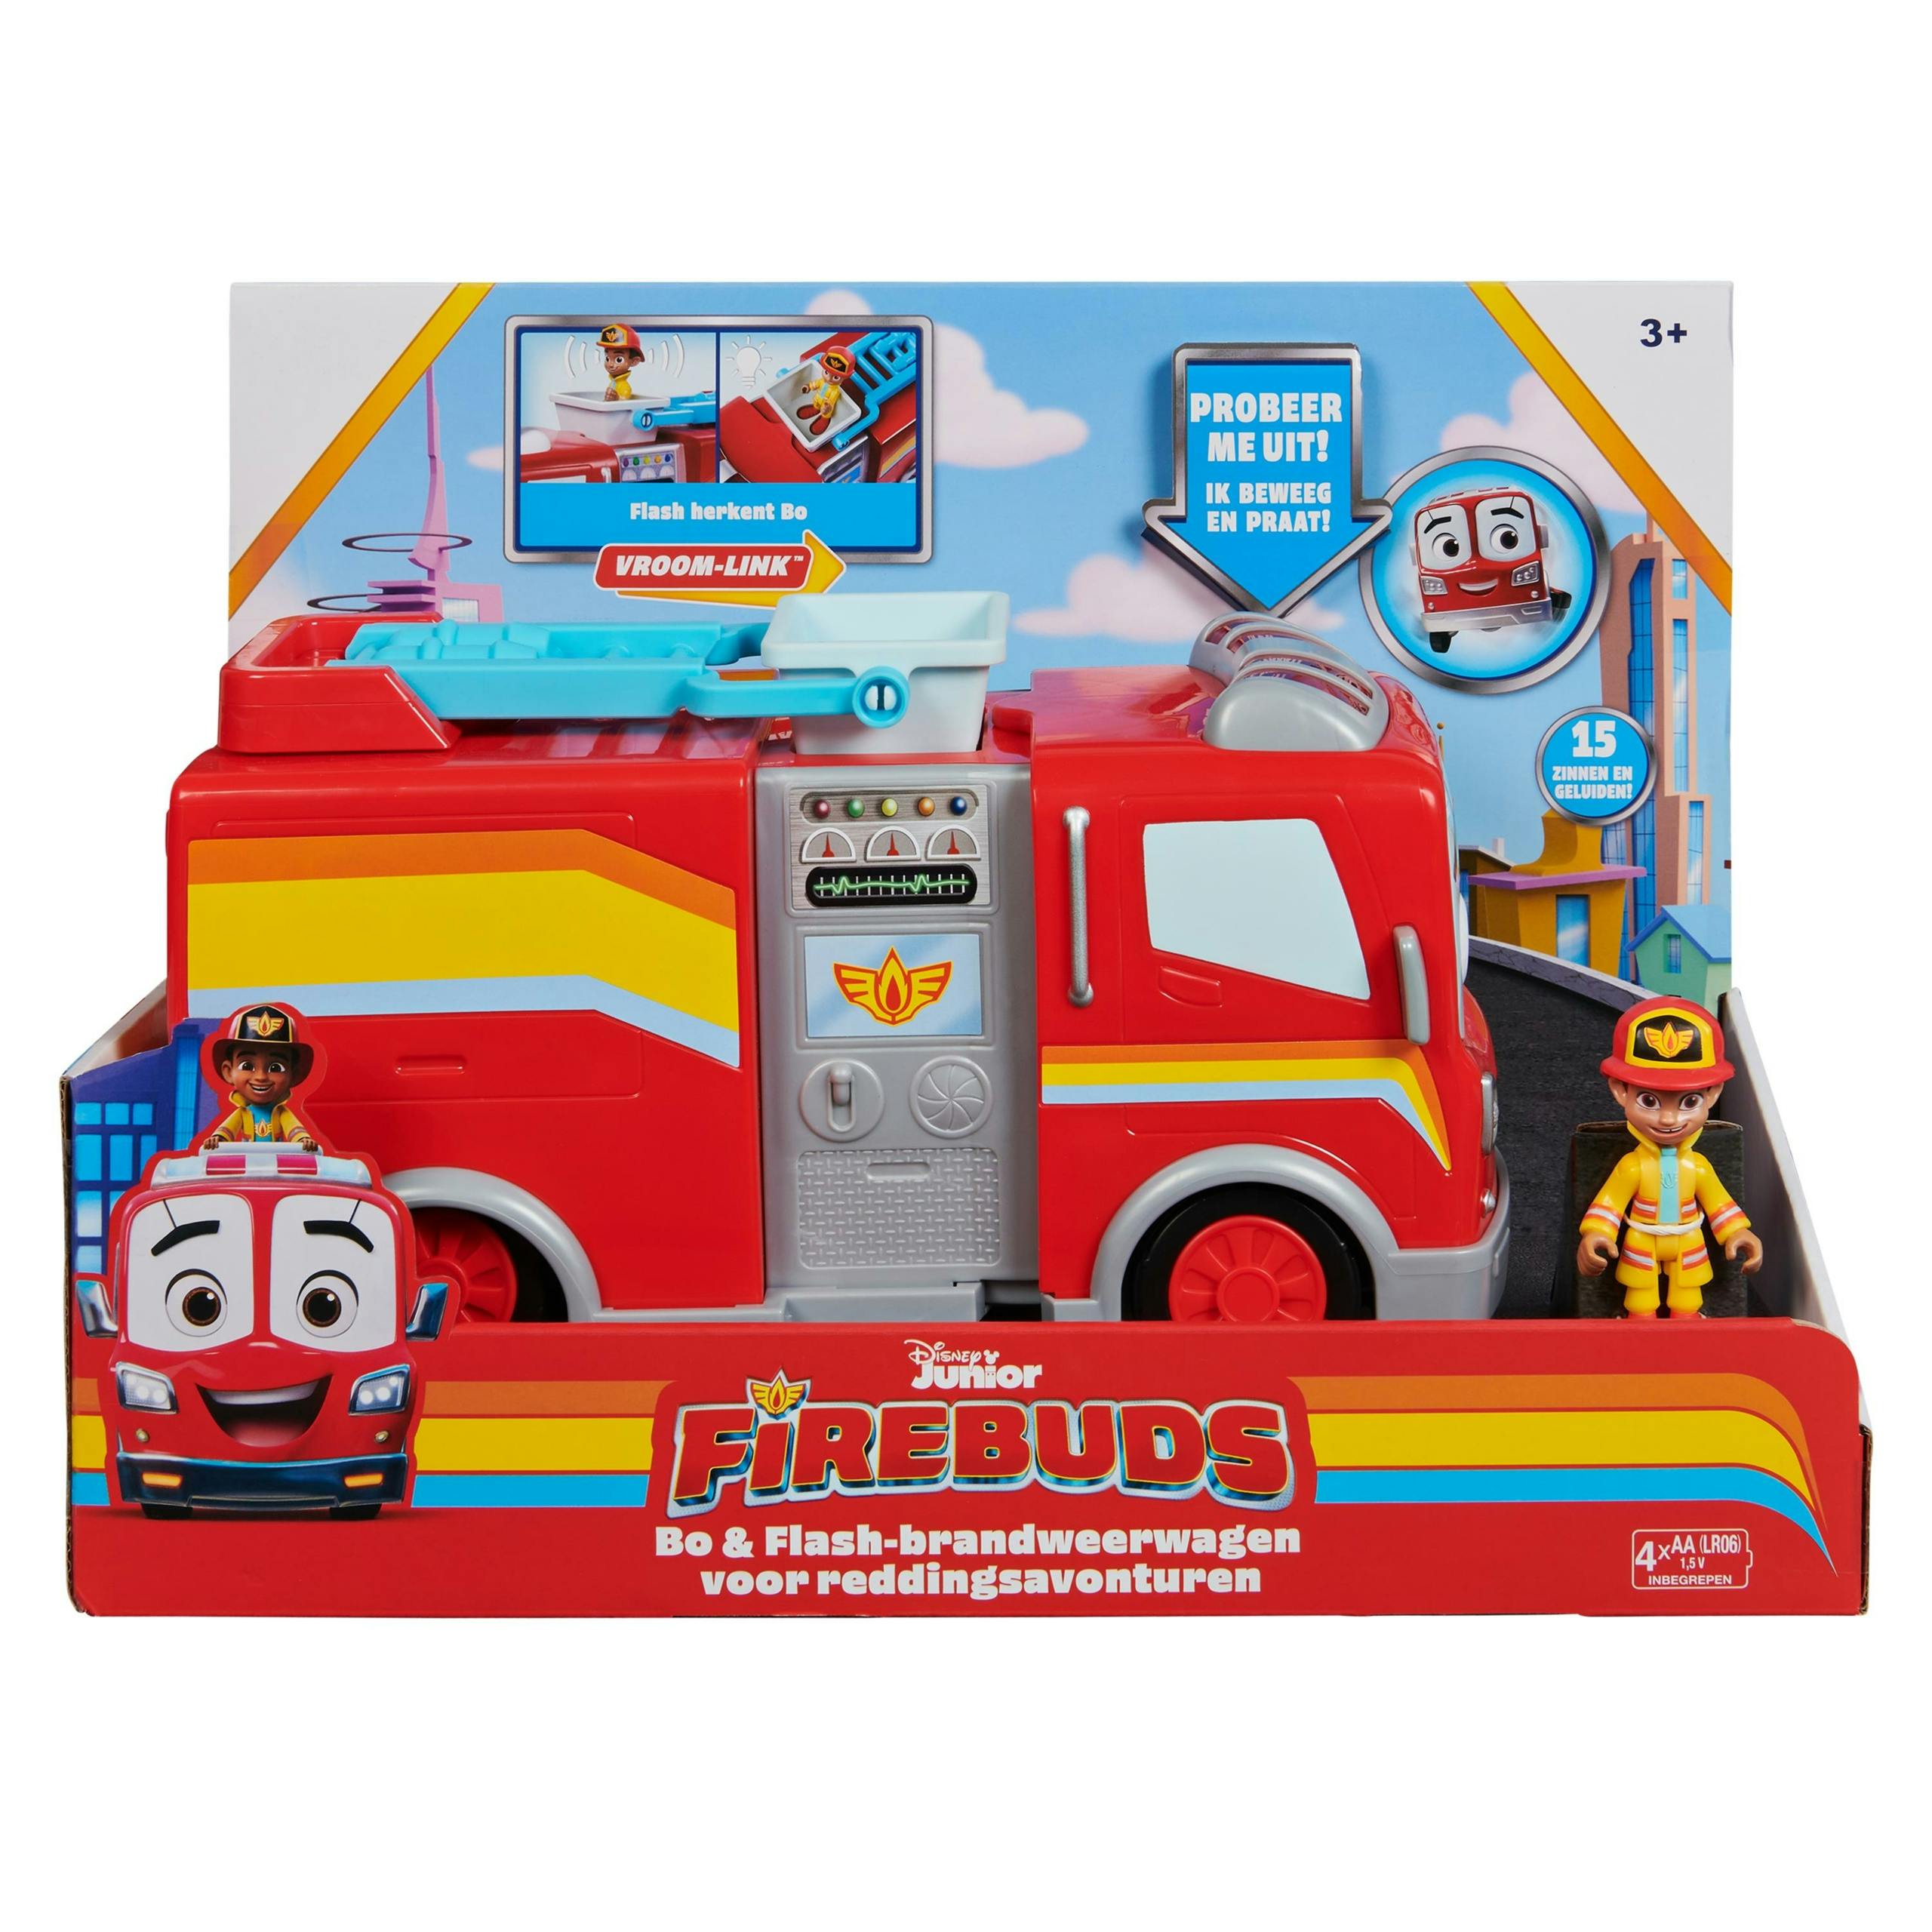 Disney Junior Firebuds Bo & Flash Brandweerwagen (1 Van Assortiment)